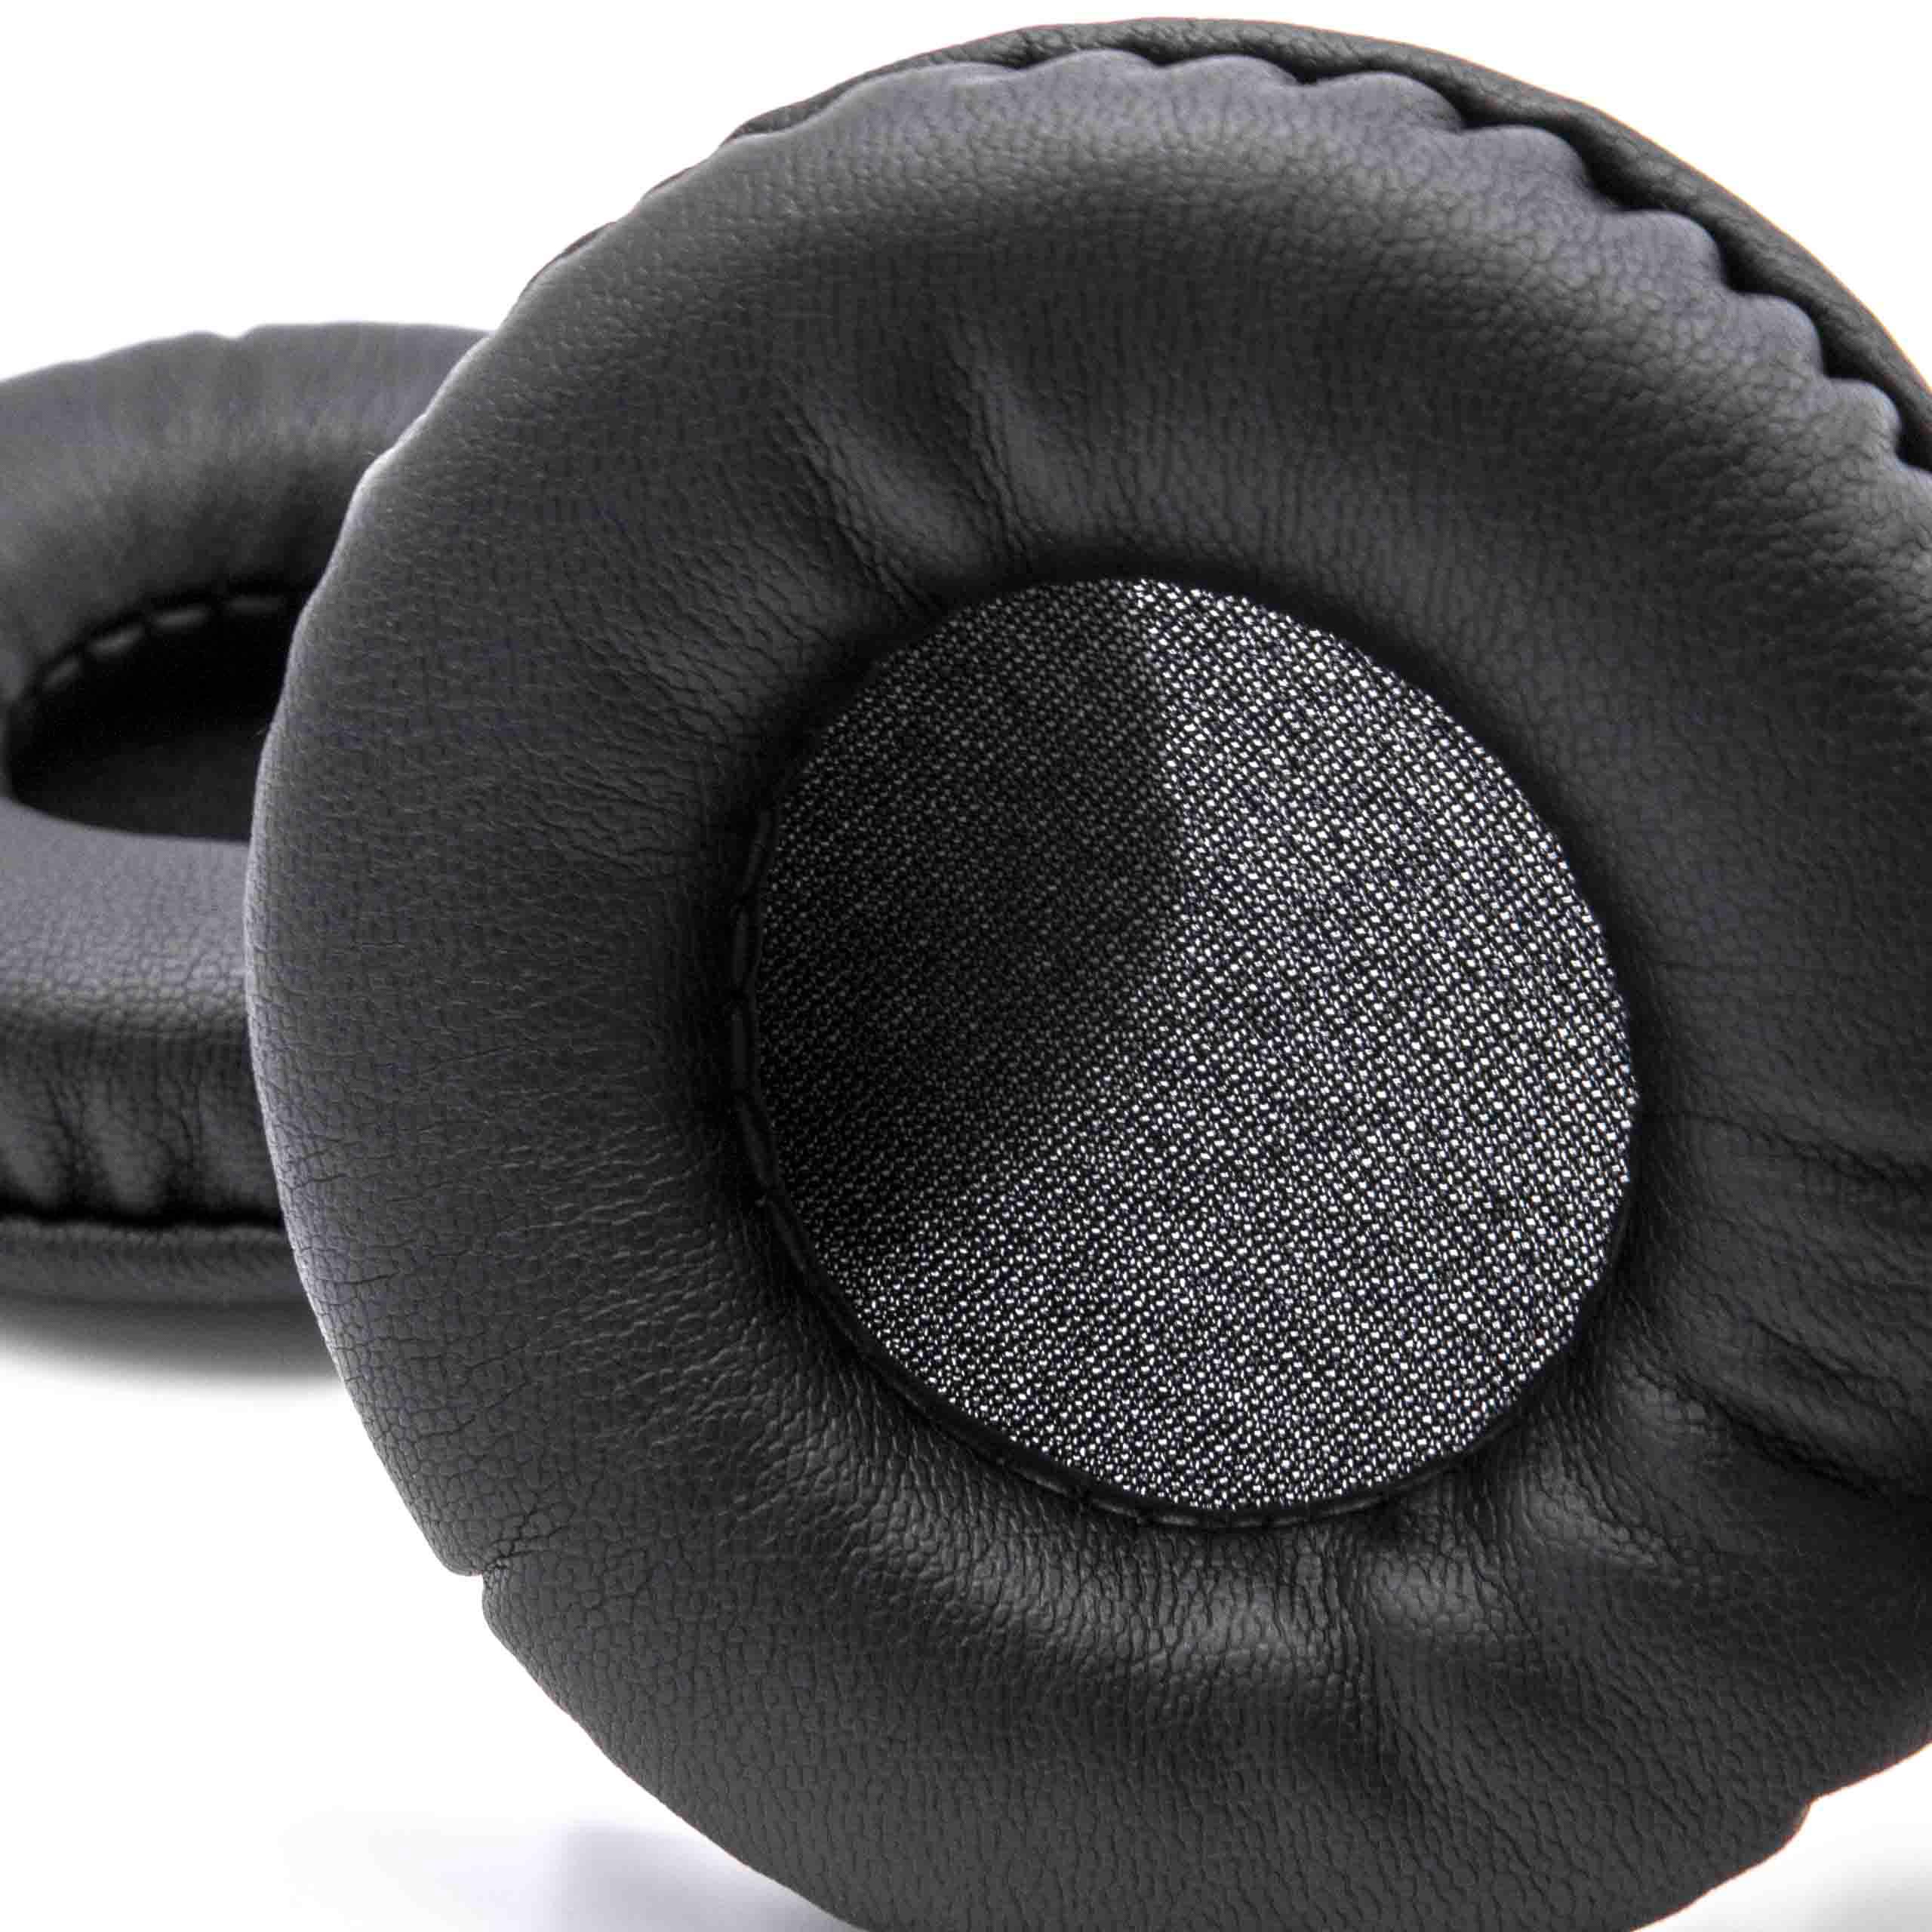 2x Almohadilla para auriculares AKG, etc. - poliuretano negro, 7,5cm